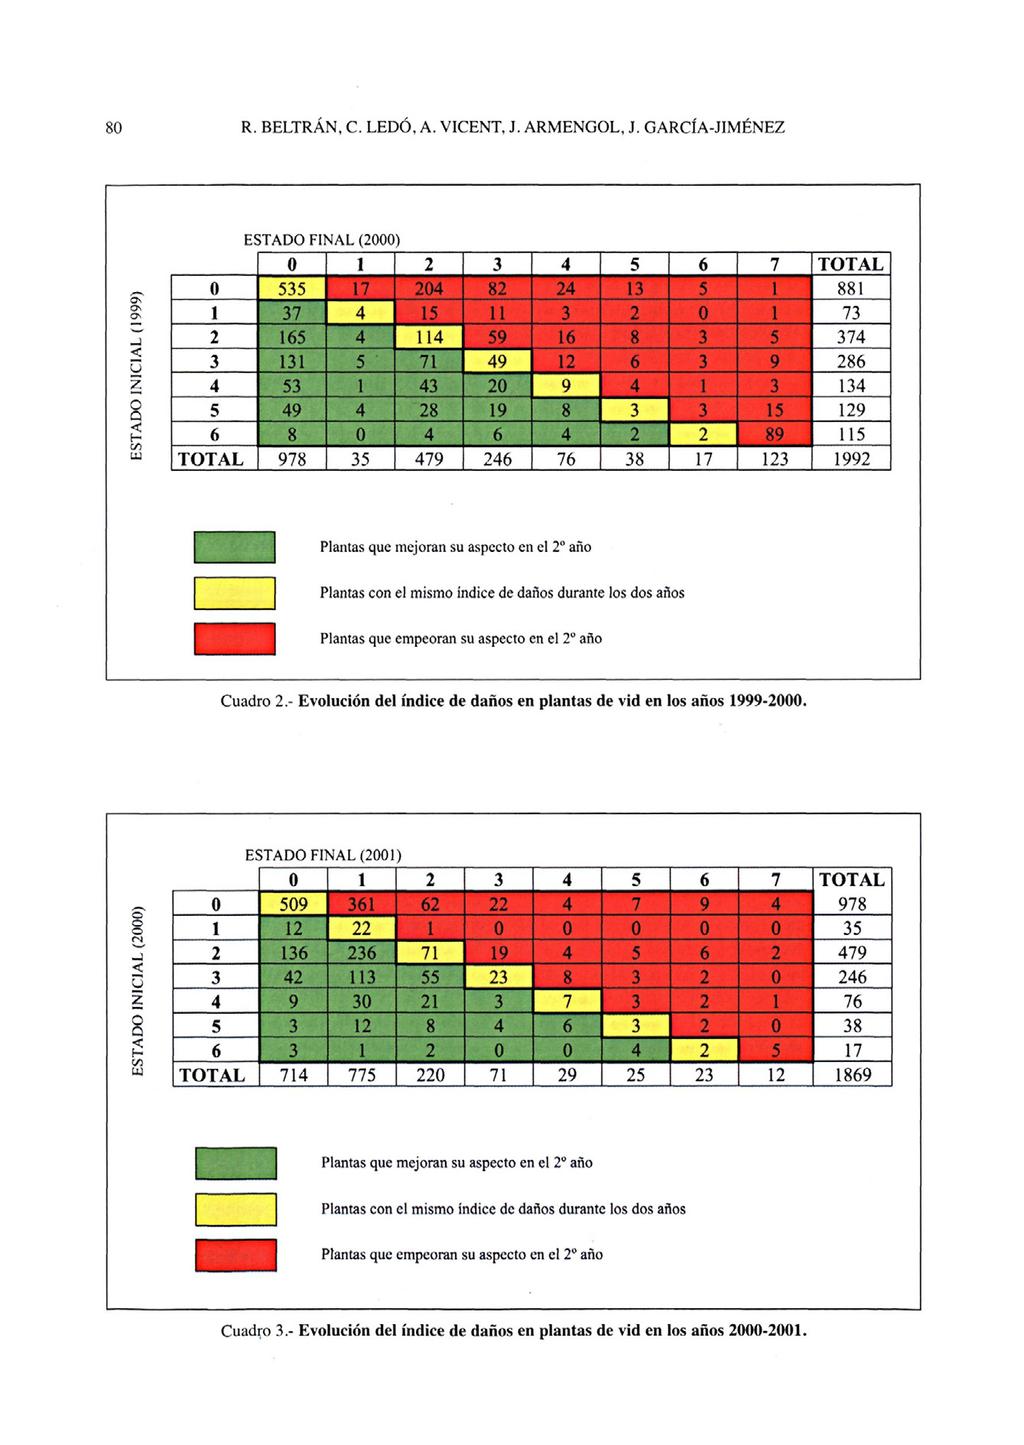 Cuadro 2.- Evolución del índice de daños en plantas de vid en los años 1999-2000.